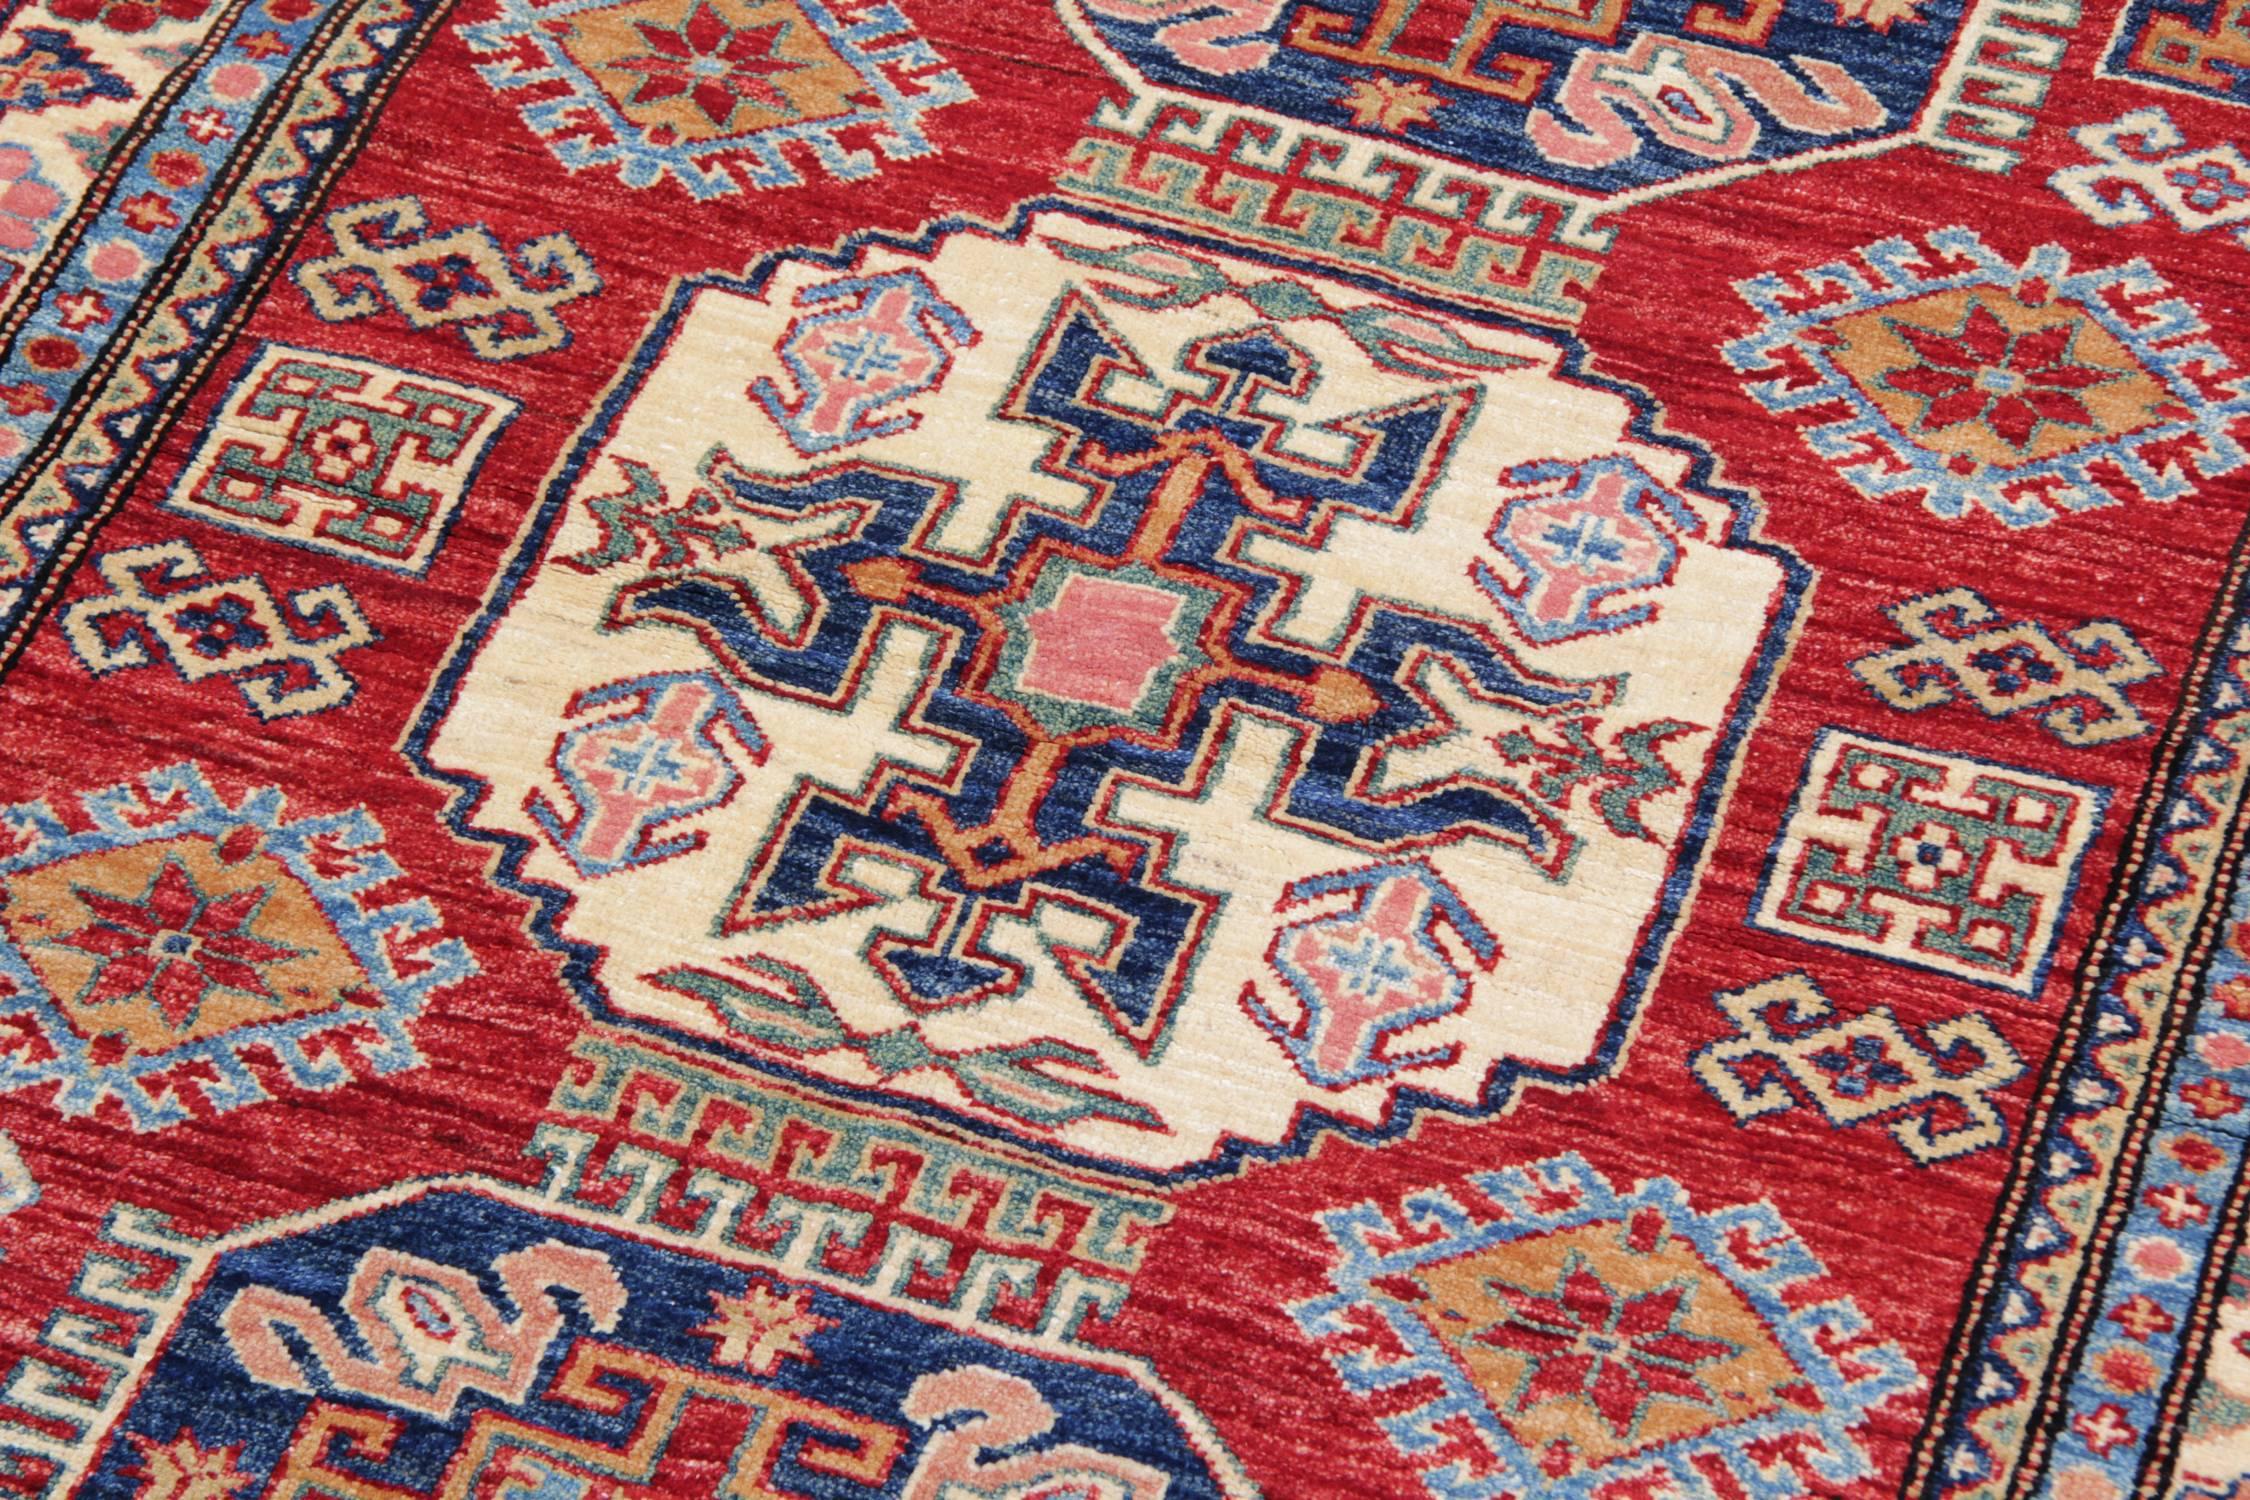 Diese neuen traditionellen handgefertigten Teppiche zeigen Designs aus der Region Kazak. Ein traditioneller Stammesteppich ist in der Region des Kasachengebiets berühmt. Dieser handgewebte Teppich wurde von afghanischen Knüpfern aus hochwertiger